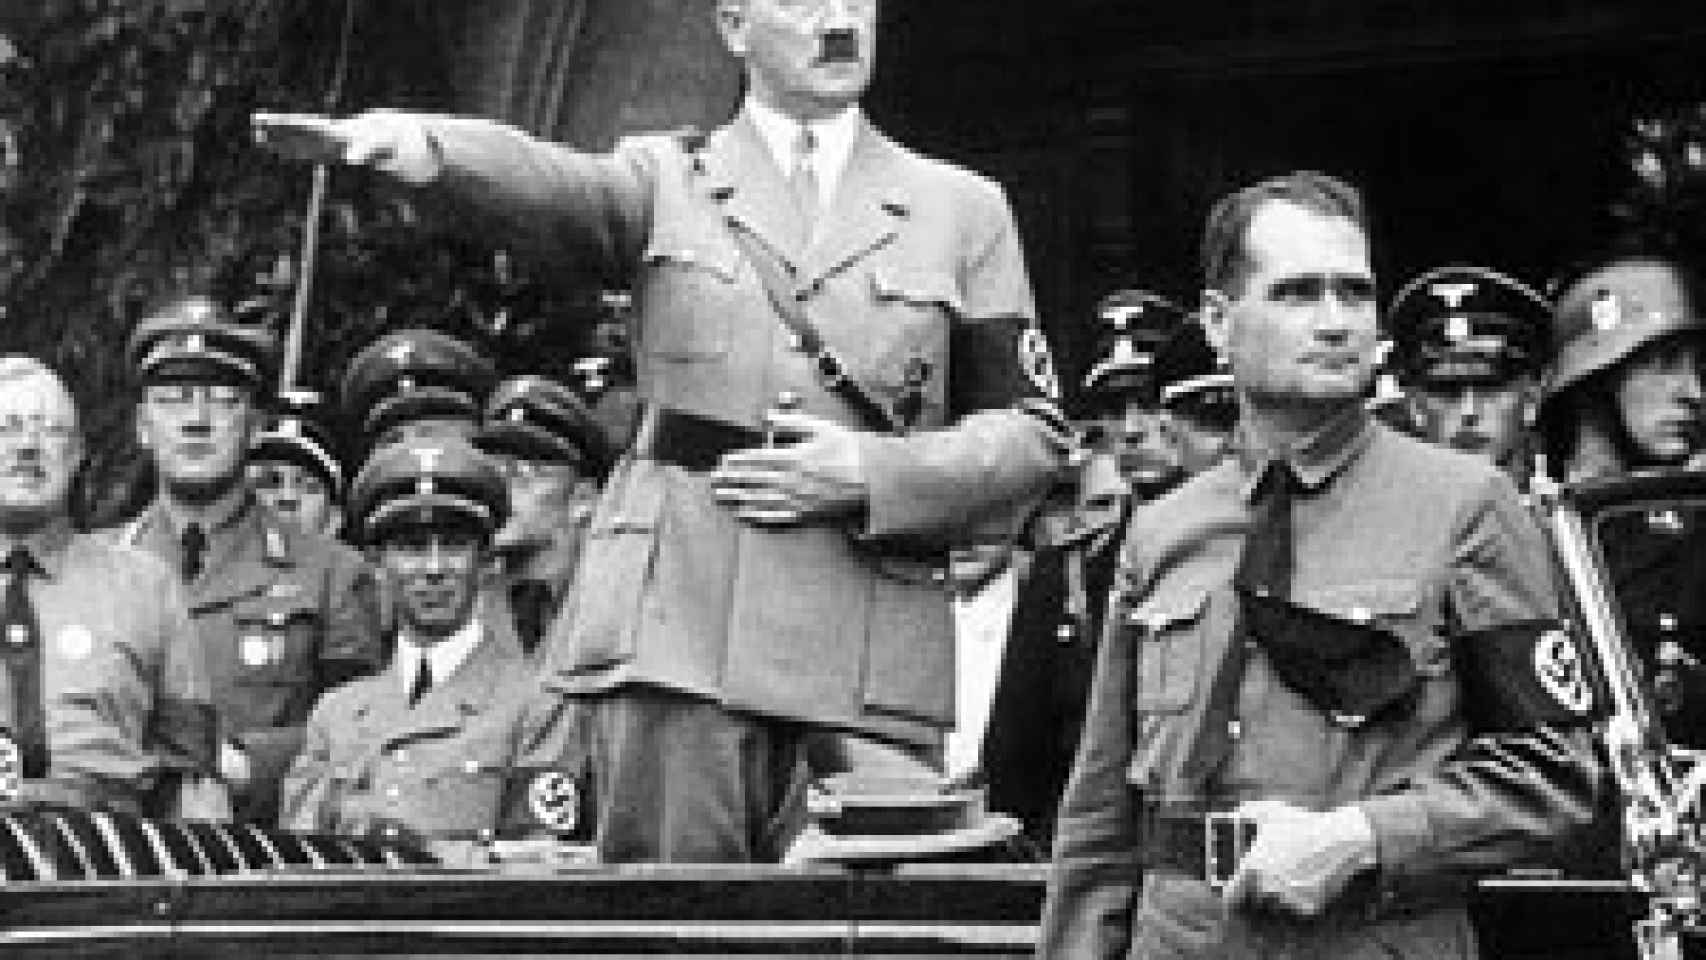 Image: El oscuro carisma de Hitler. Cómo y por qué arrastró a milllones hacia el abismo